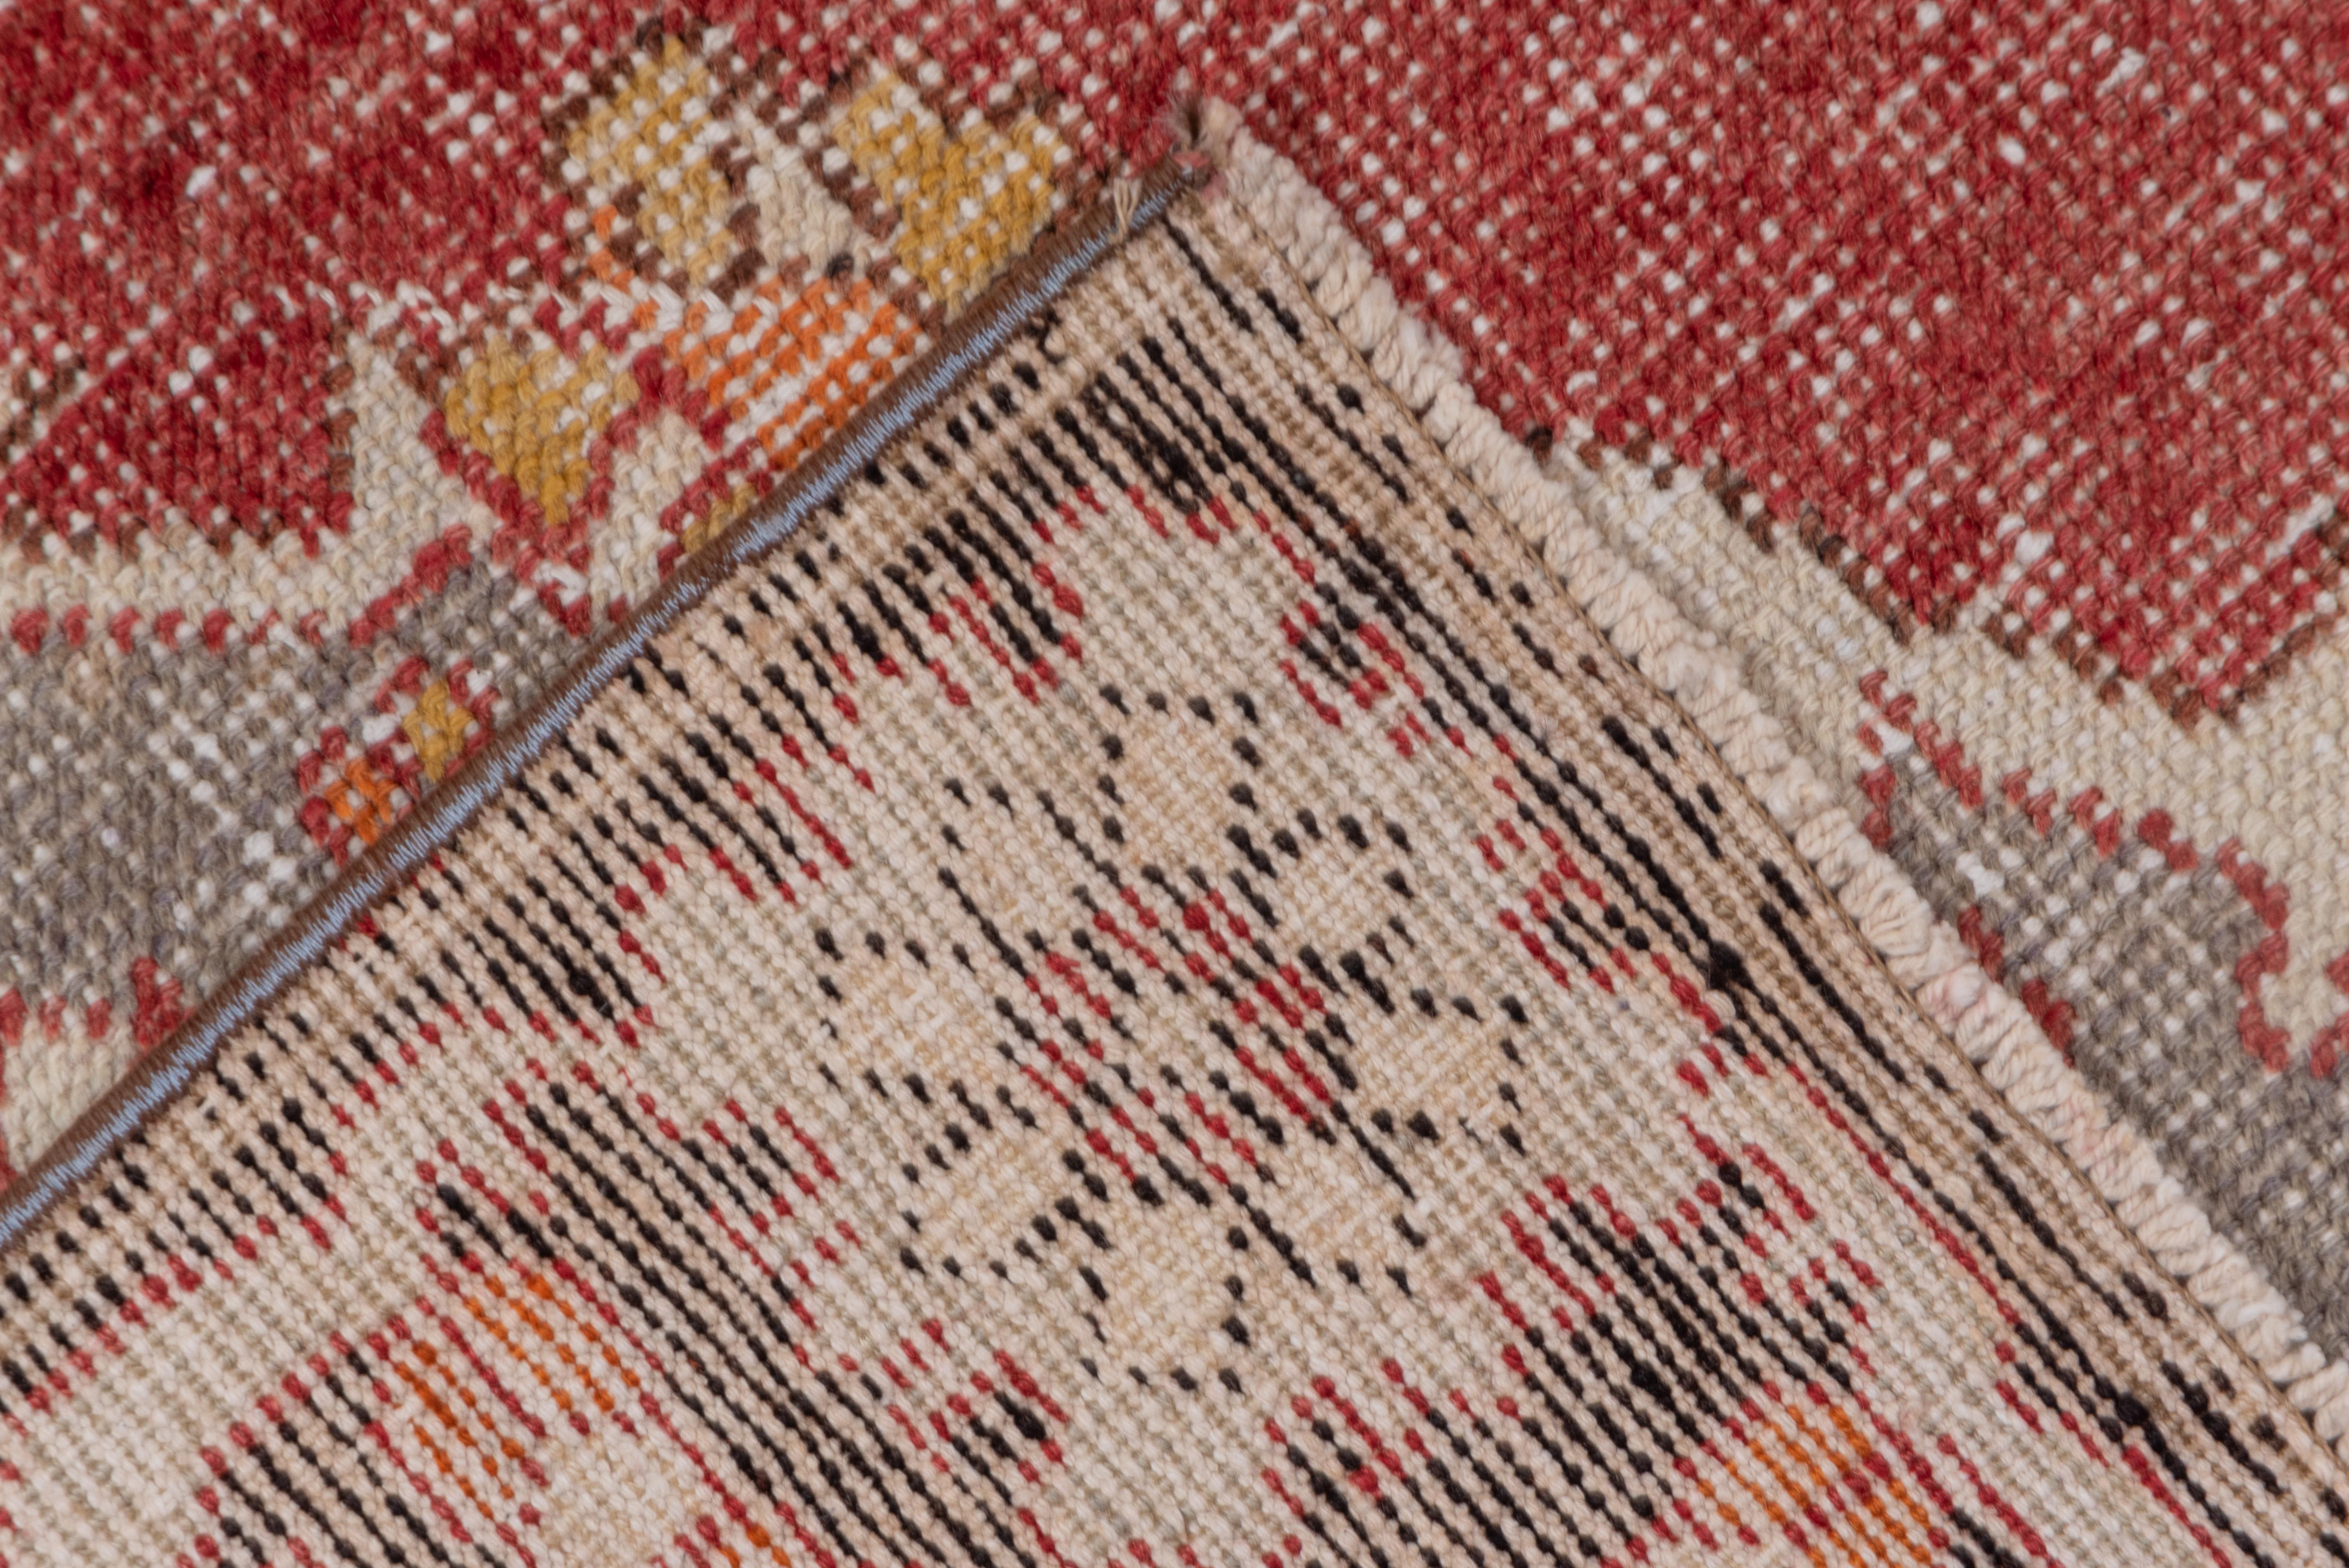 Ein 8-lappiges braunes Medaillon ist auf einem offenen rotbraunen Feld mit tealfarbenen Ecken mit Blumen- und doppelten Boteh-Blatt-Motiven angeordnet. Braune Umrandung aus kleinen Palmetten und kettenförmig verflochtenen Weinreben.